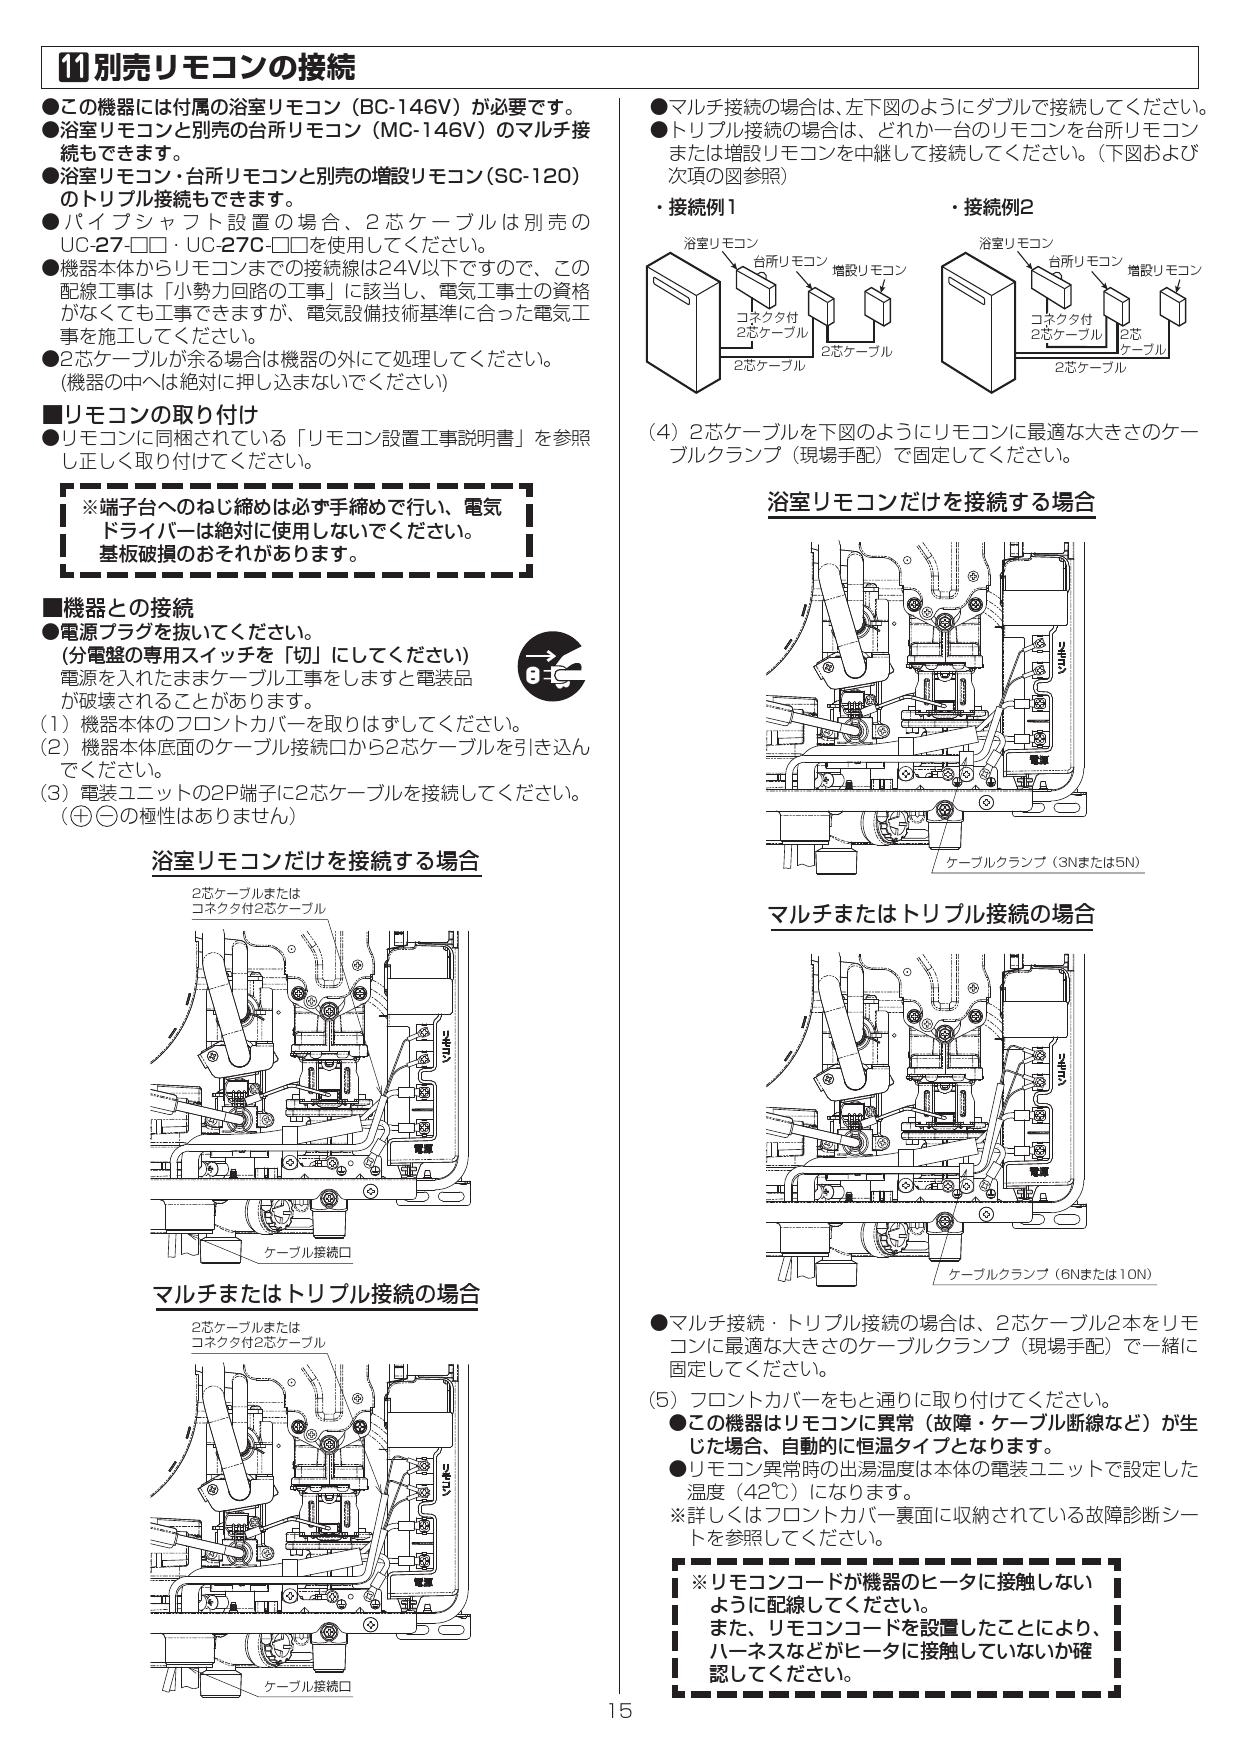 [RUX-V2016BOX(A) 13A] リンナイ ガス給湯専用機 20号 都市ガス 壁組込設置型  リモコン別売 - 2